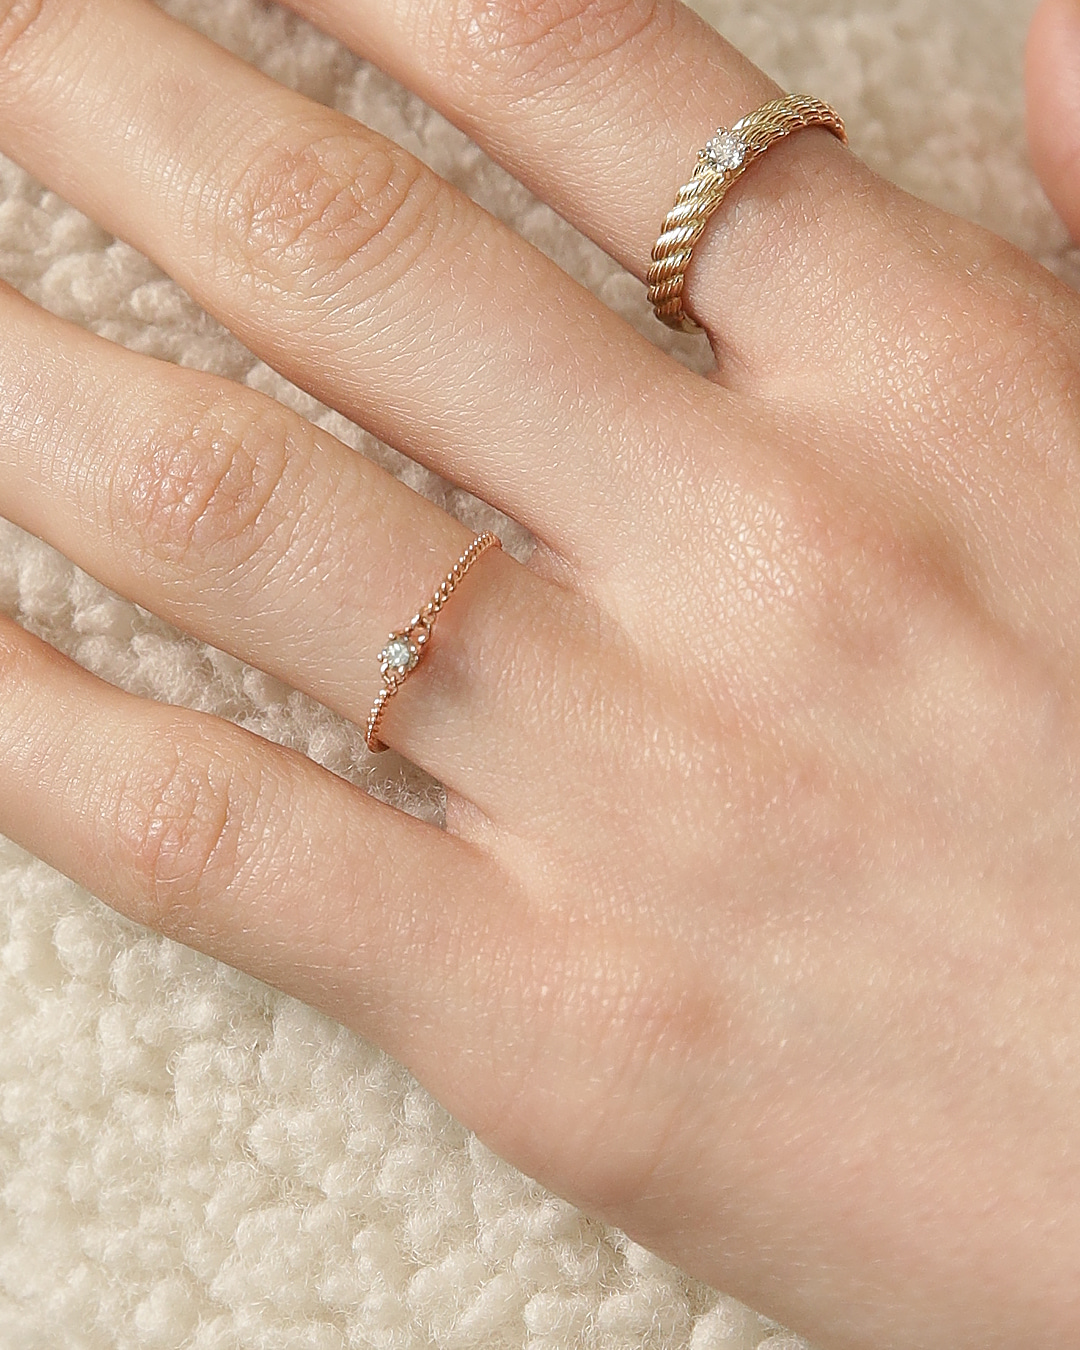 다이아몬드가 셋팅된 커브체인 반지이다.